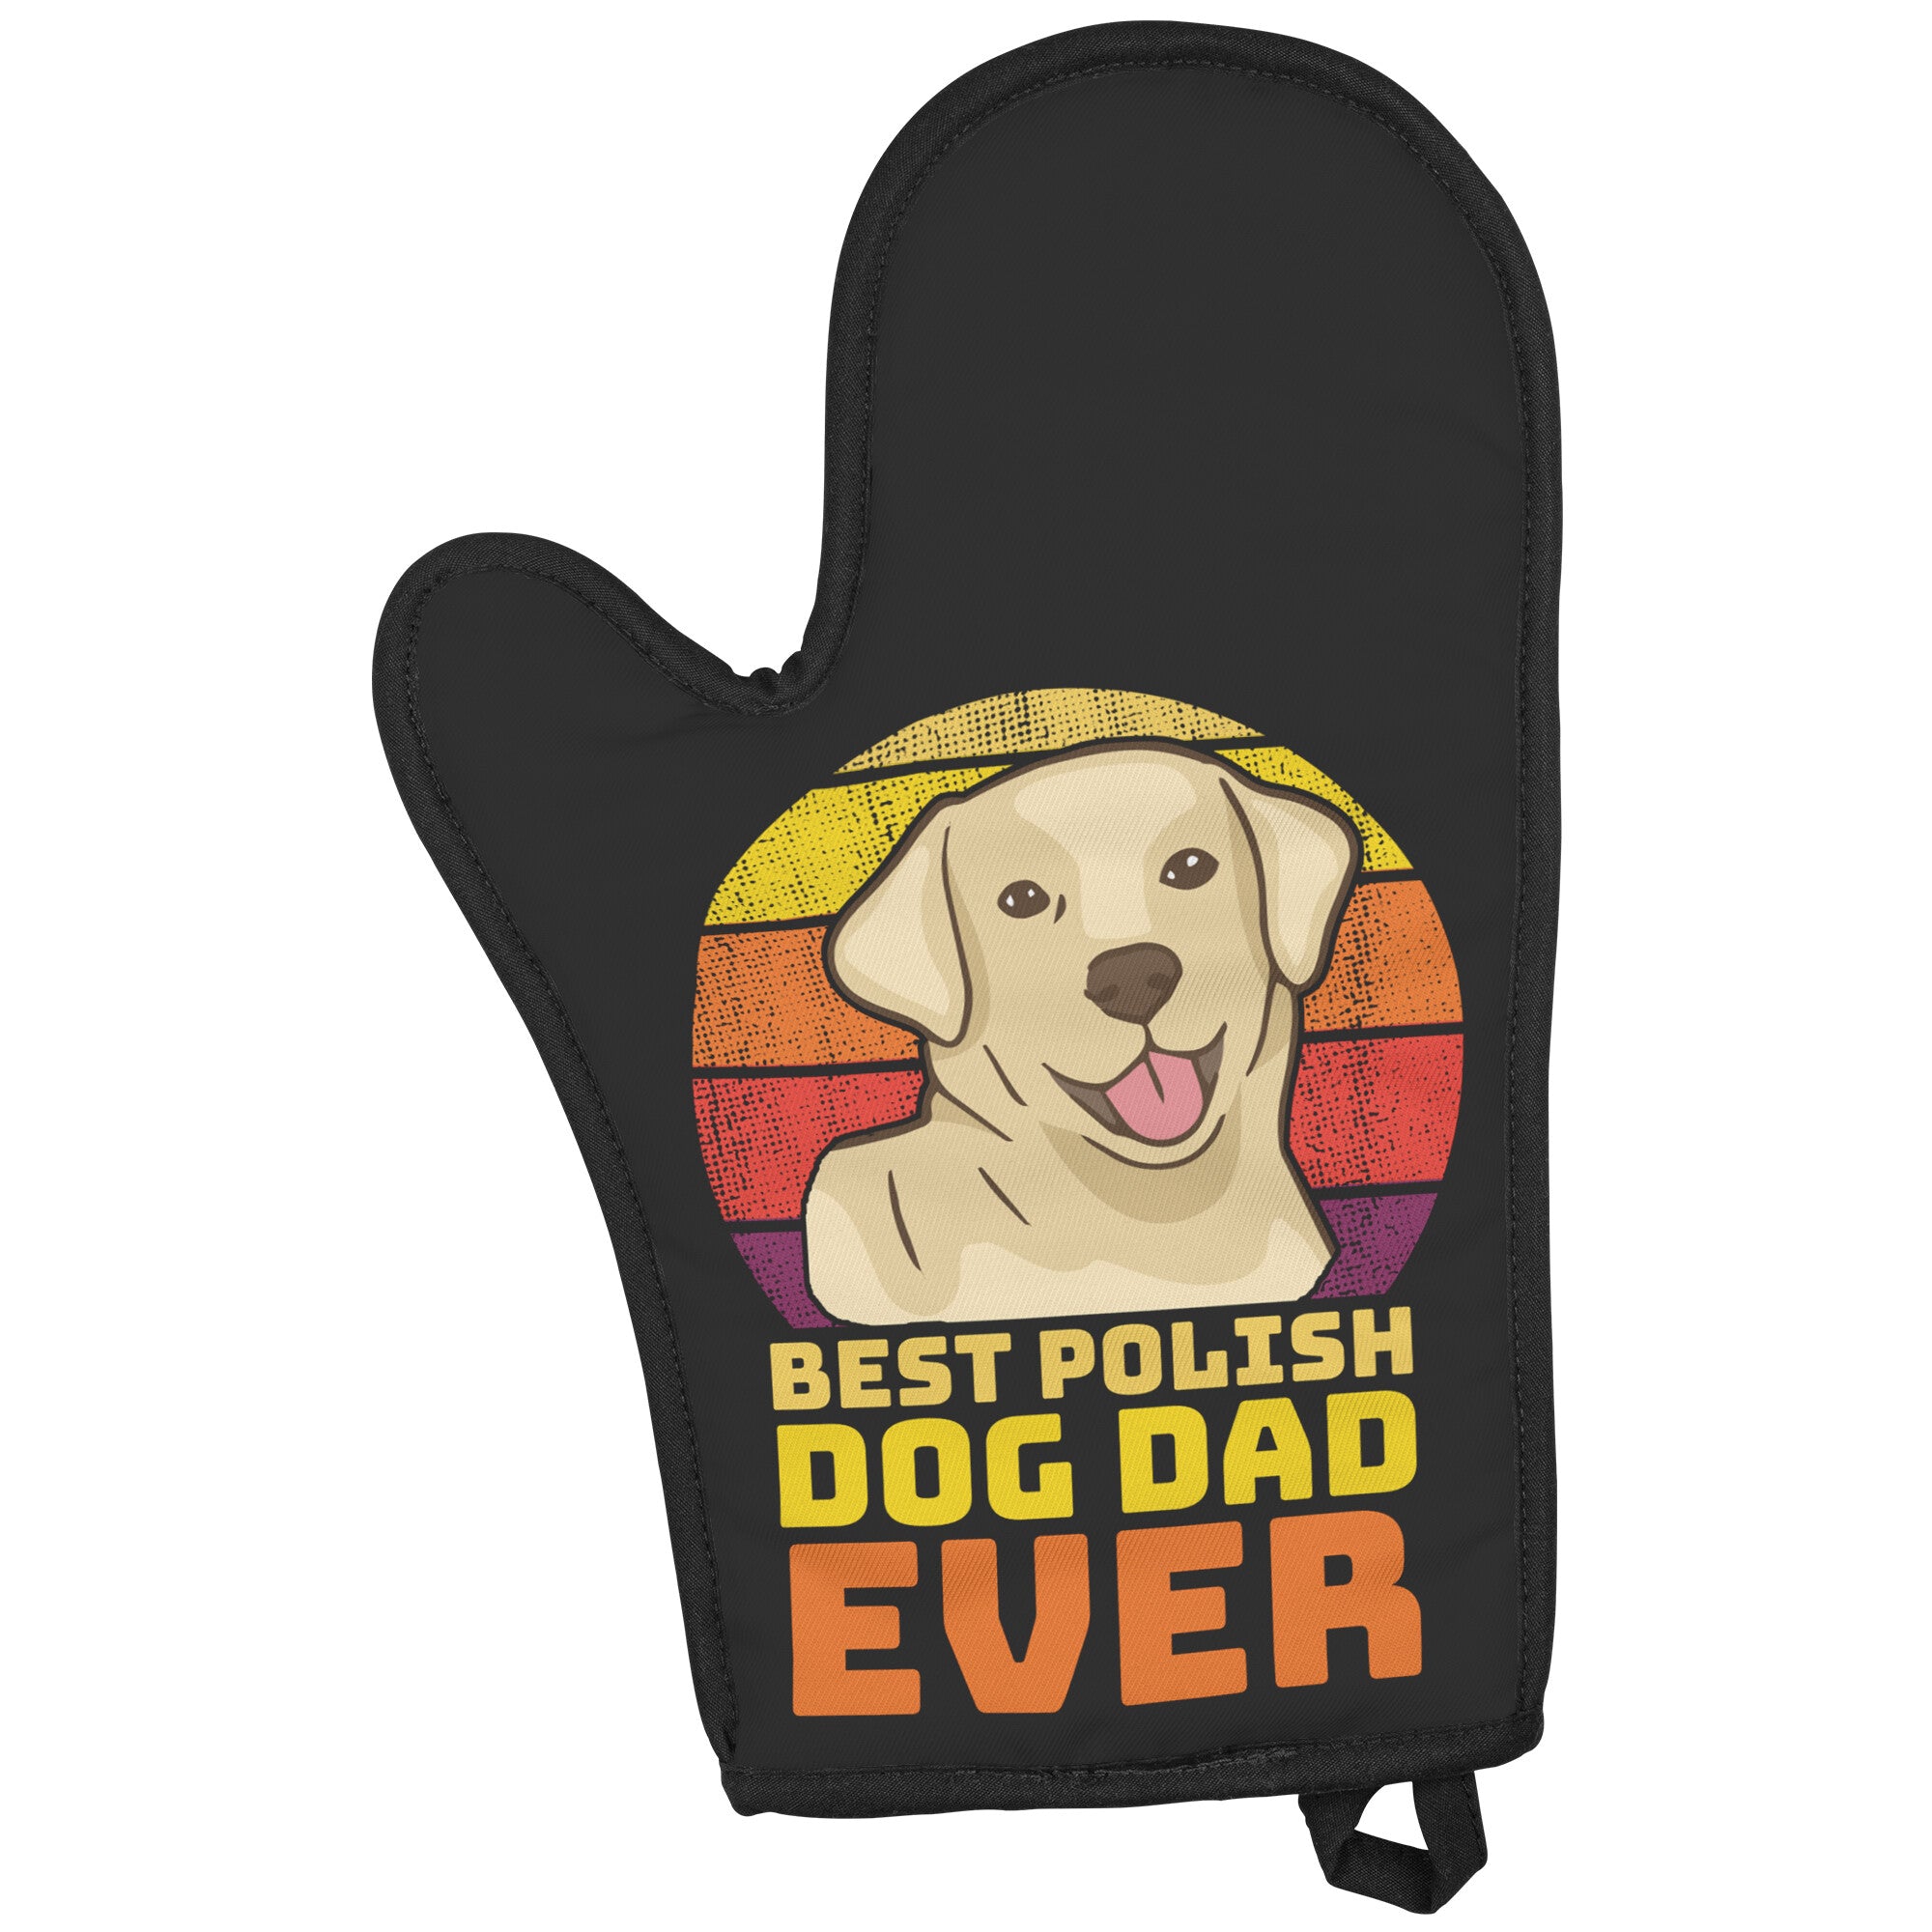 Best Polish Dog Dad Ever Oven Mitt Kitchenware teelaunch   